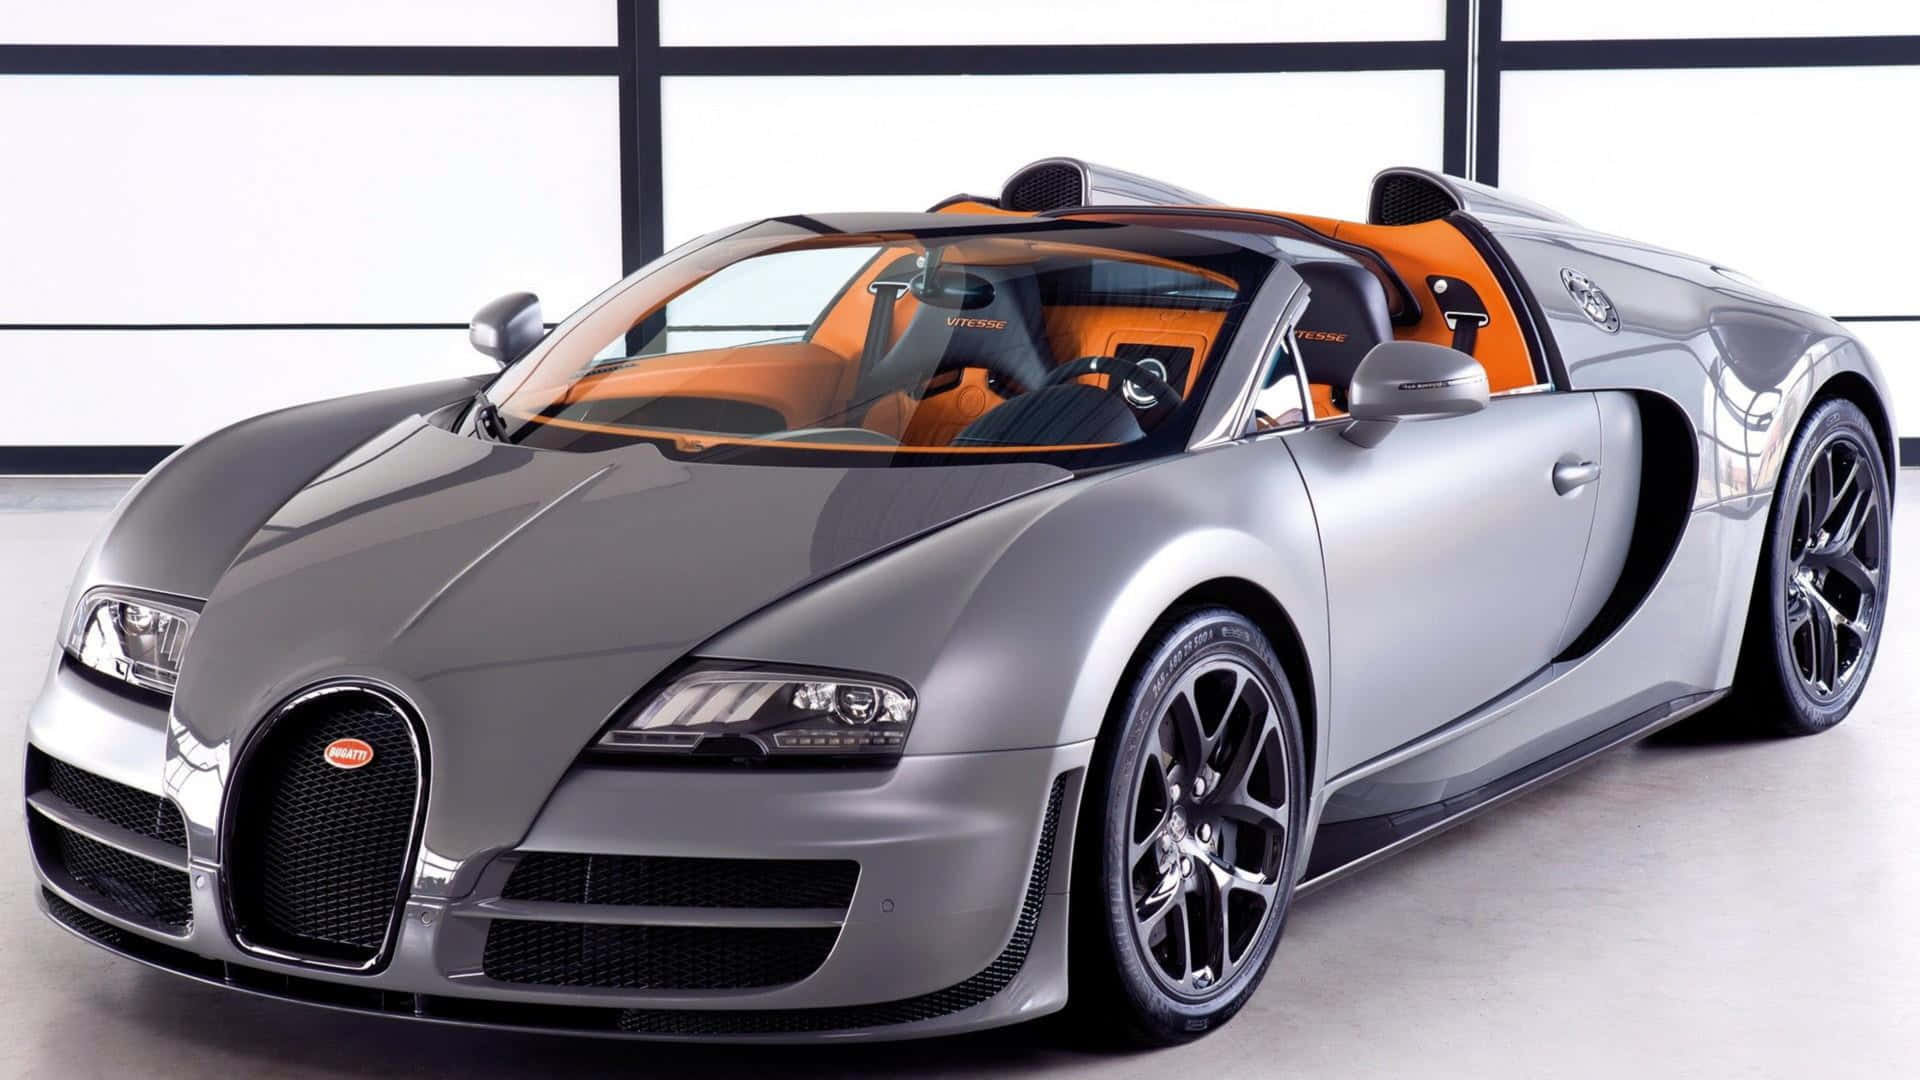 Luxurious Speed - Magnificent Bugatti in 4K Resolution Wallpaper